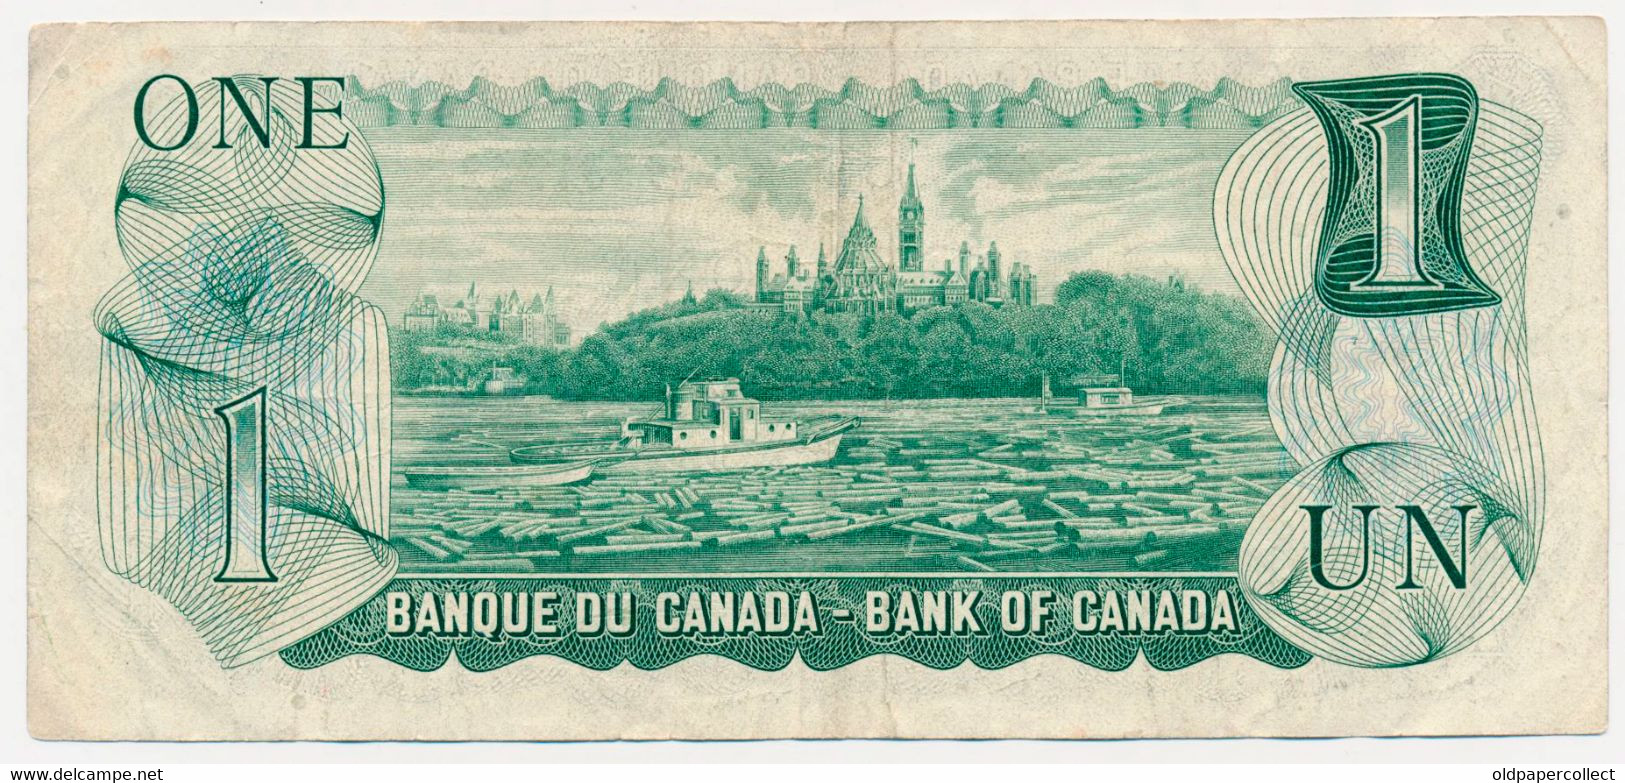 CANADA KANADA 1 DOLLAR Pick-85a(1) Queen Elizabeth II / Parliament, Ottawa River Signatures: Lawson & Bouey 1973 XF - Canada